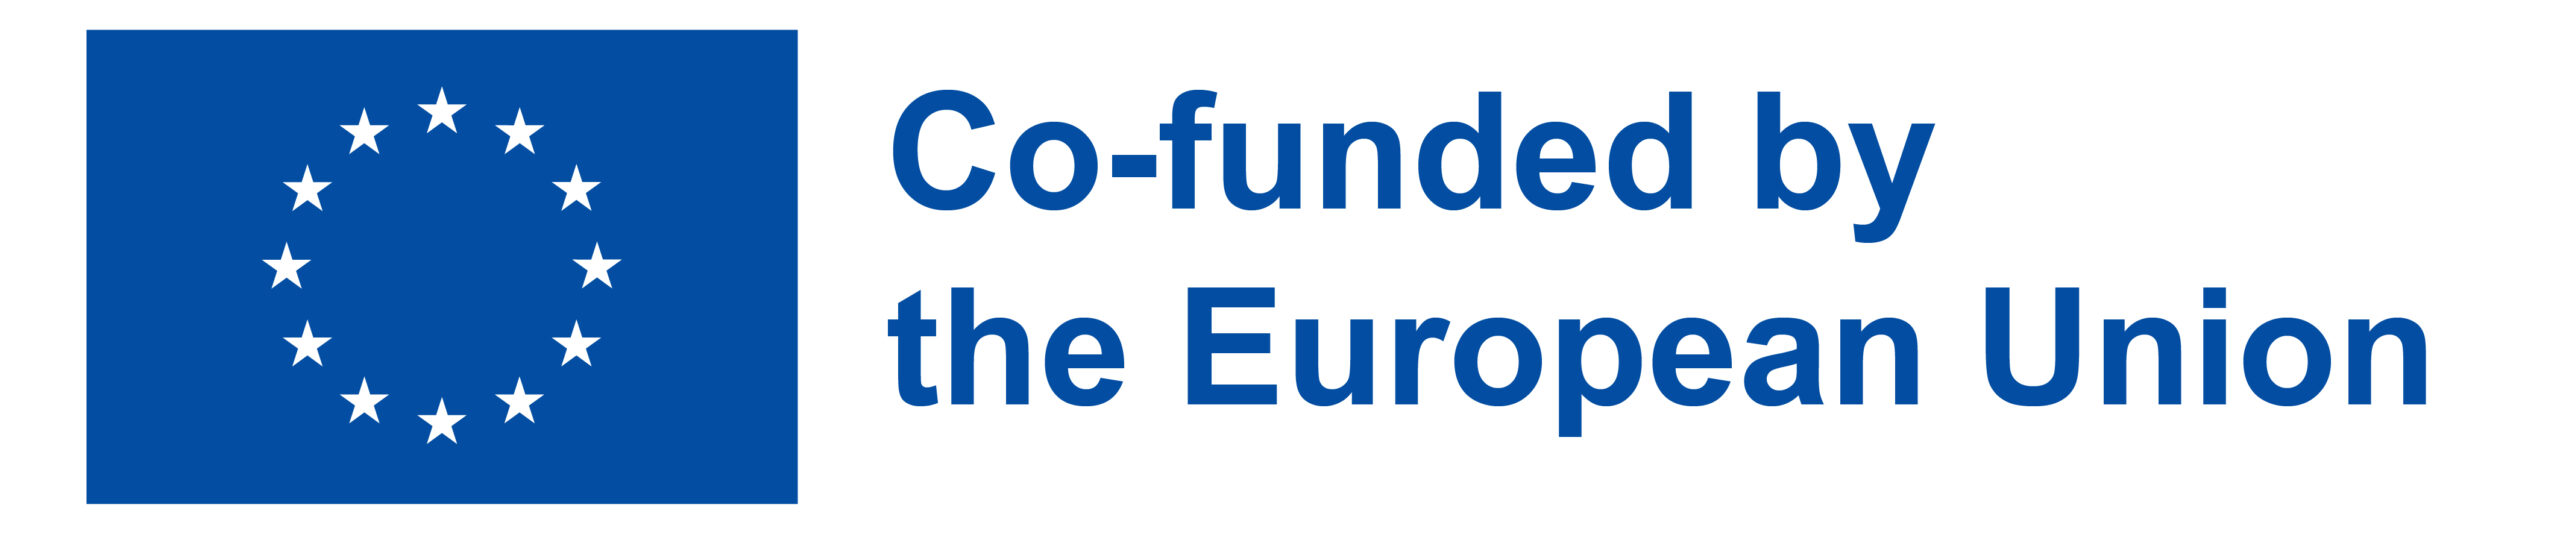 EU emblem- Co-funded by the EU